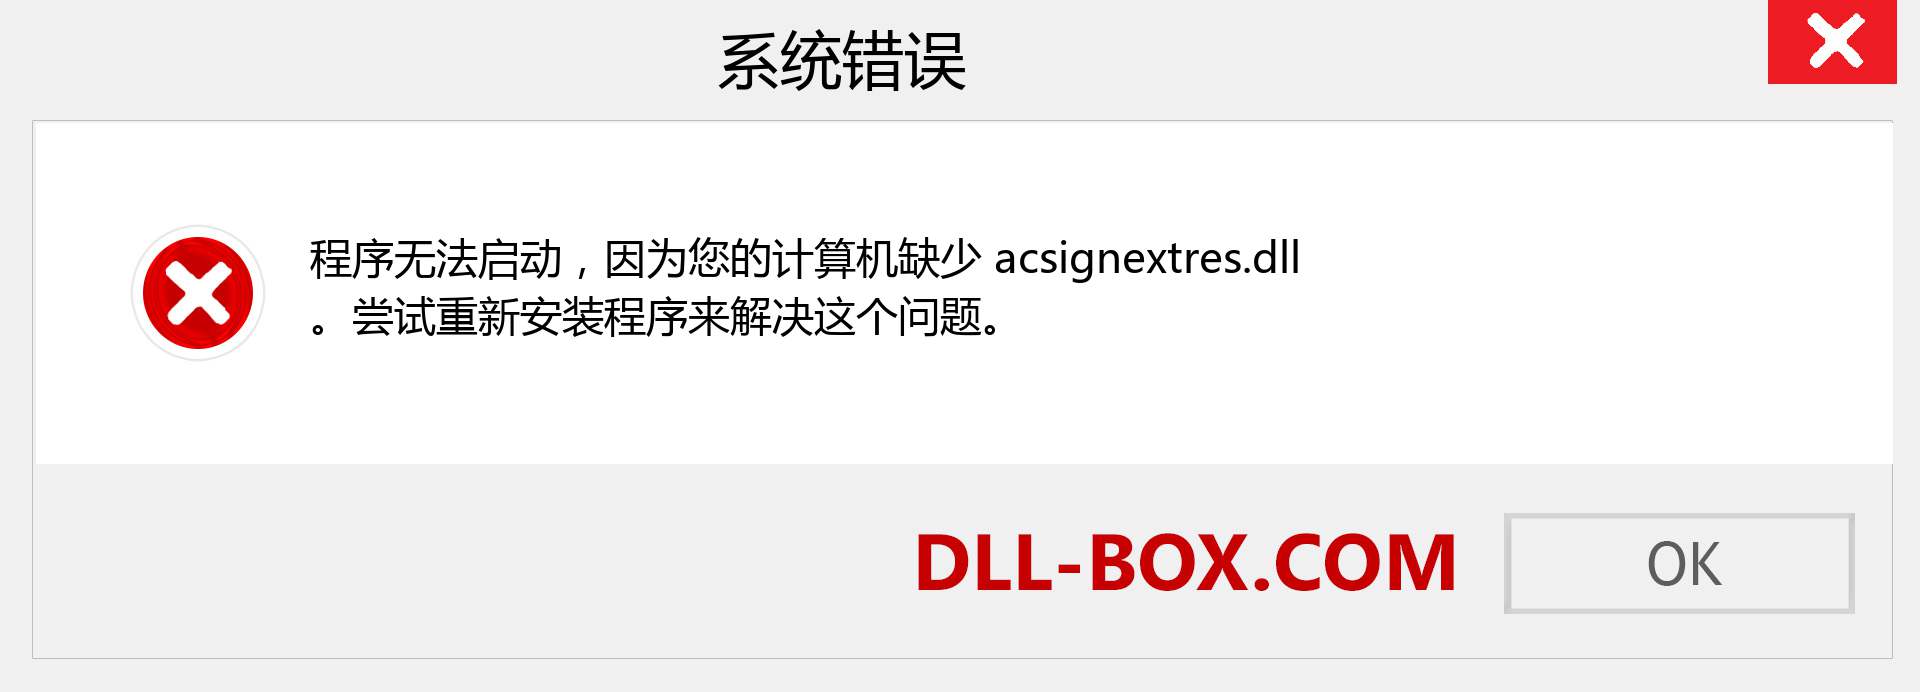 acsignextres.dll 文件丢失？。 适用于 Windows 7、8、10 的下载 - 修复 Windows、照片、图像上的 acsignextres dll 丢失错误